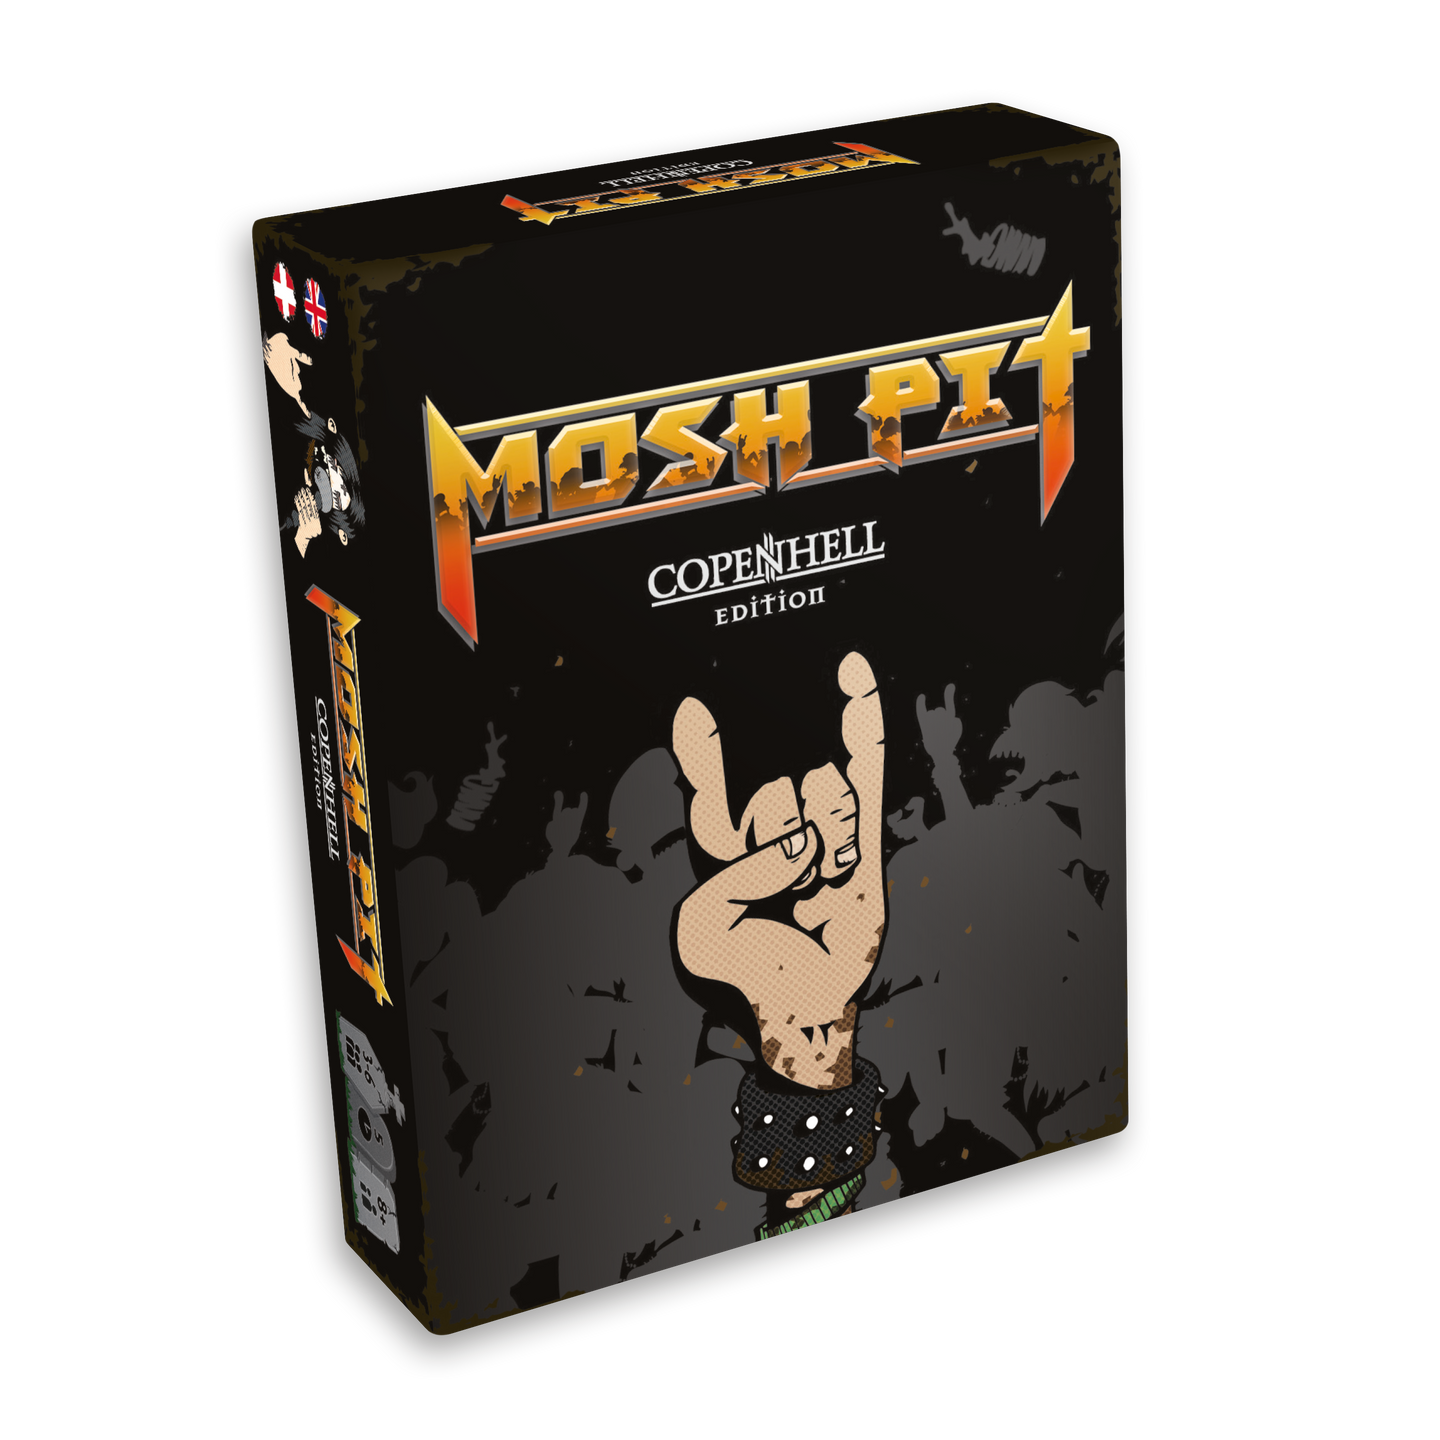 Mosh Pit COPENHELL Edition Boardgame